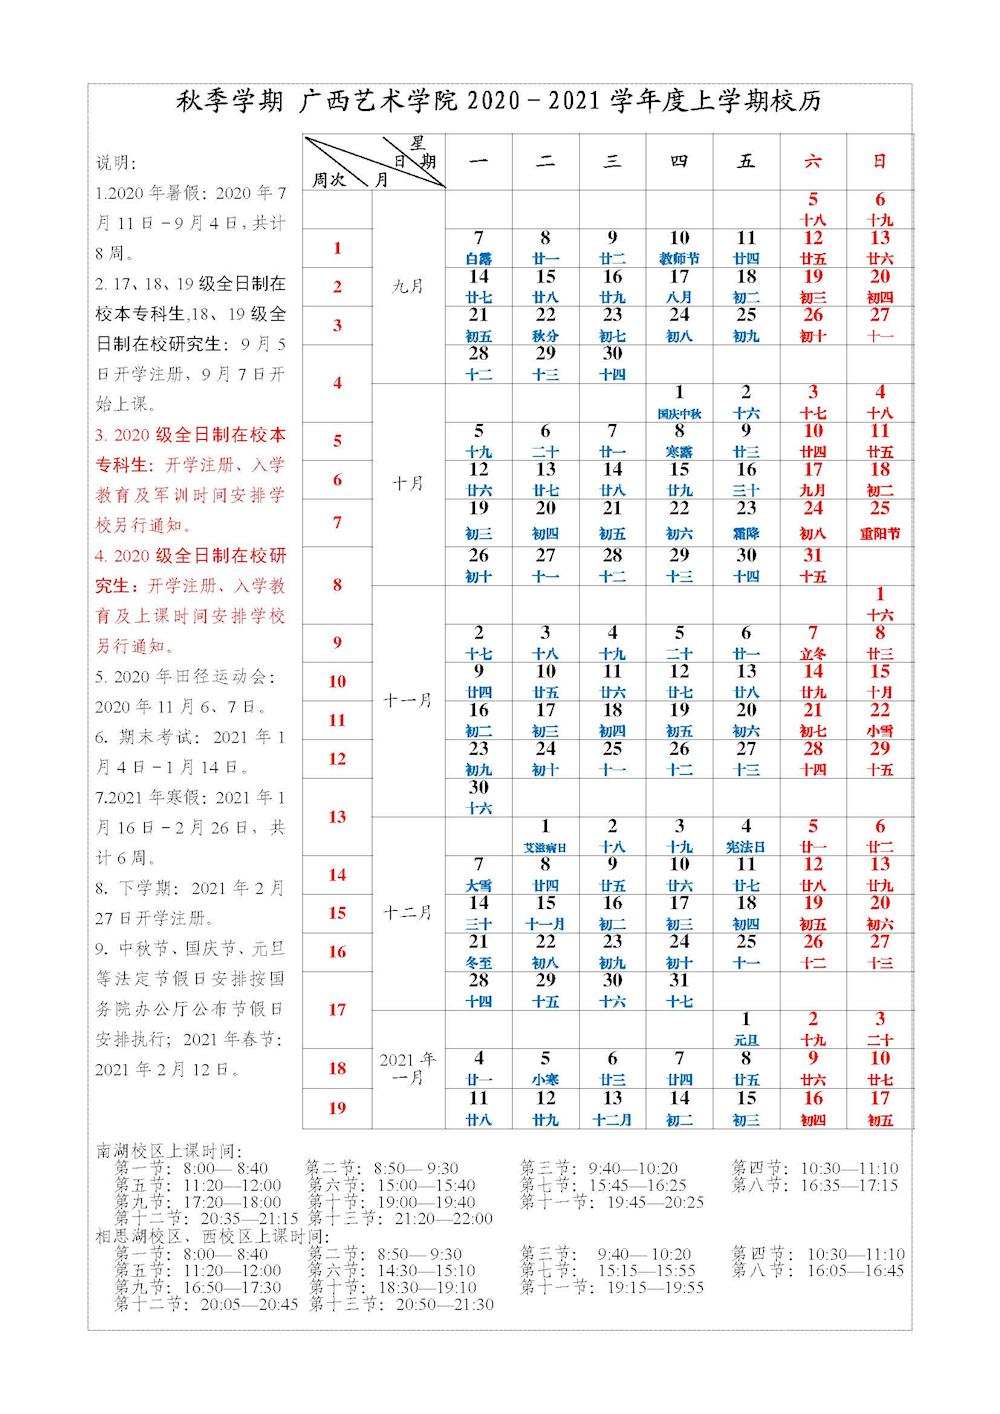 广西艺术学院2020-2021学年度校历_教学校历_教务信息